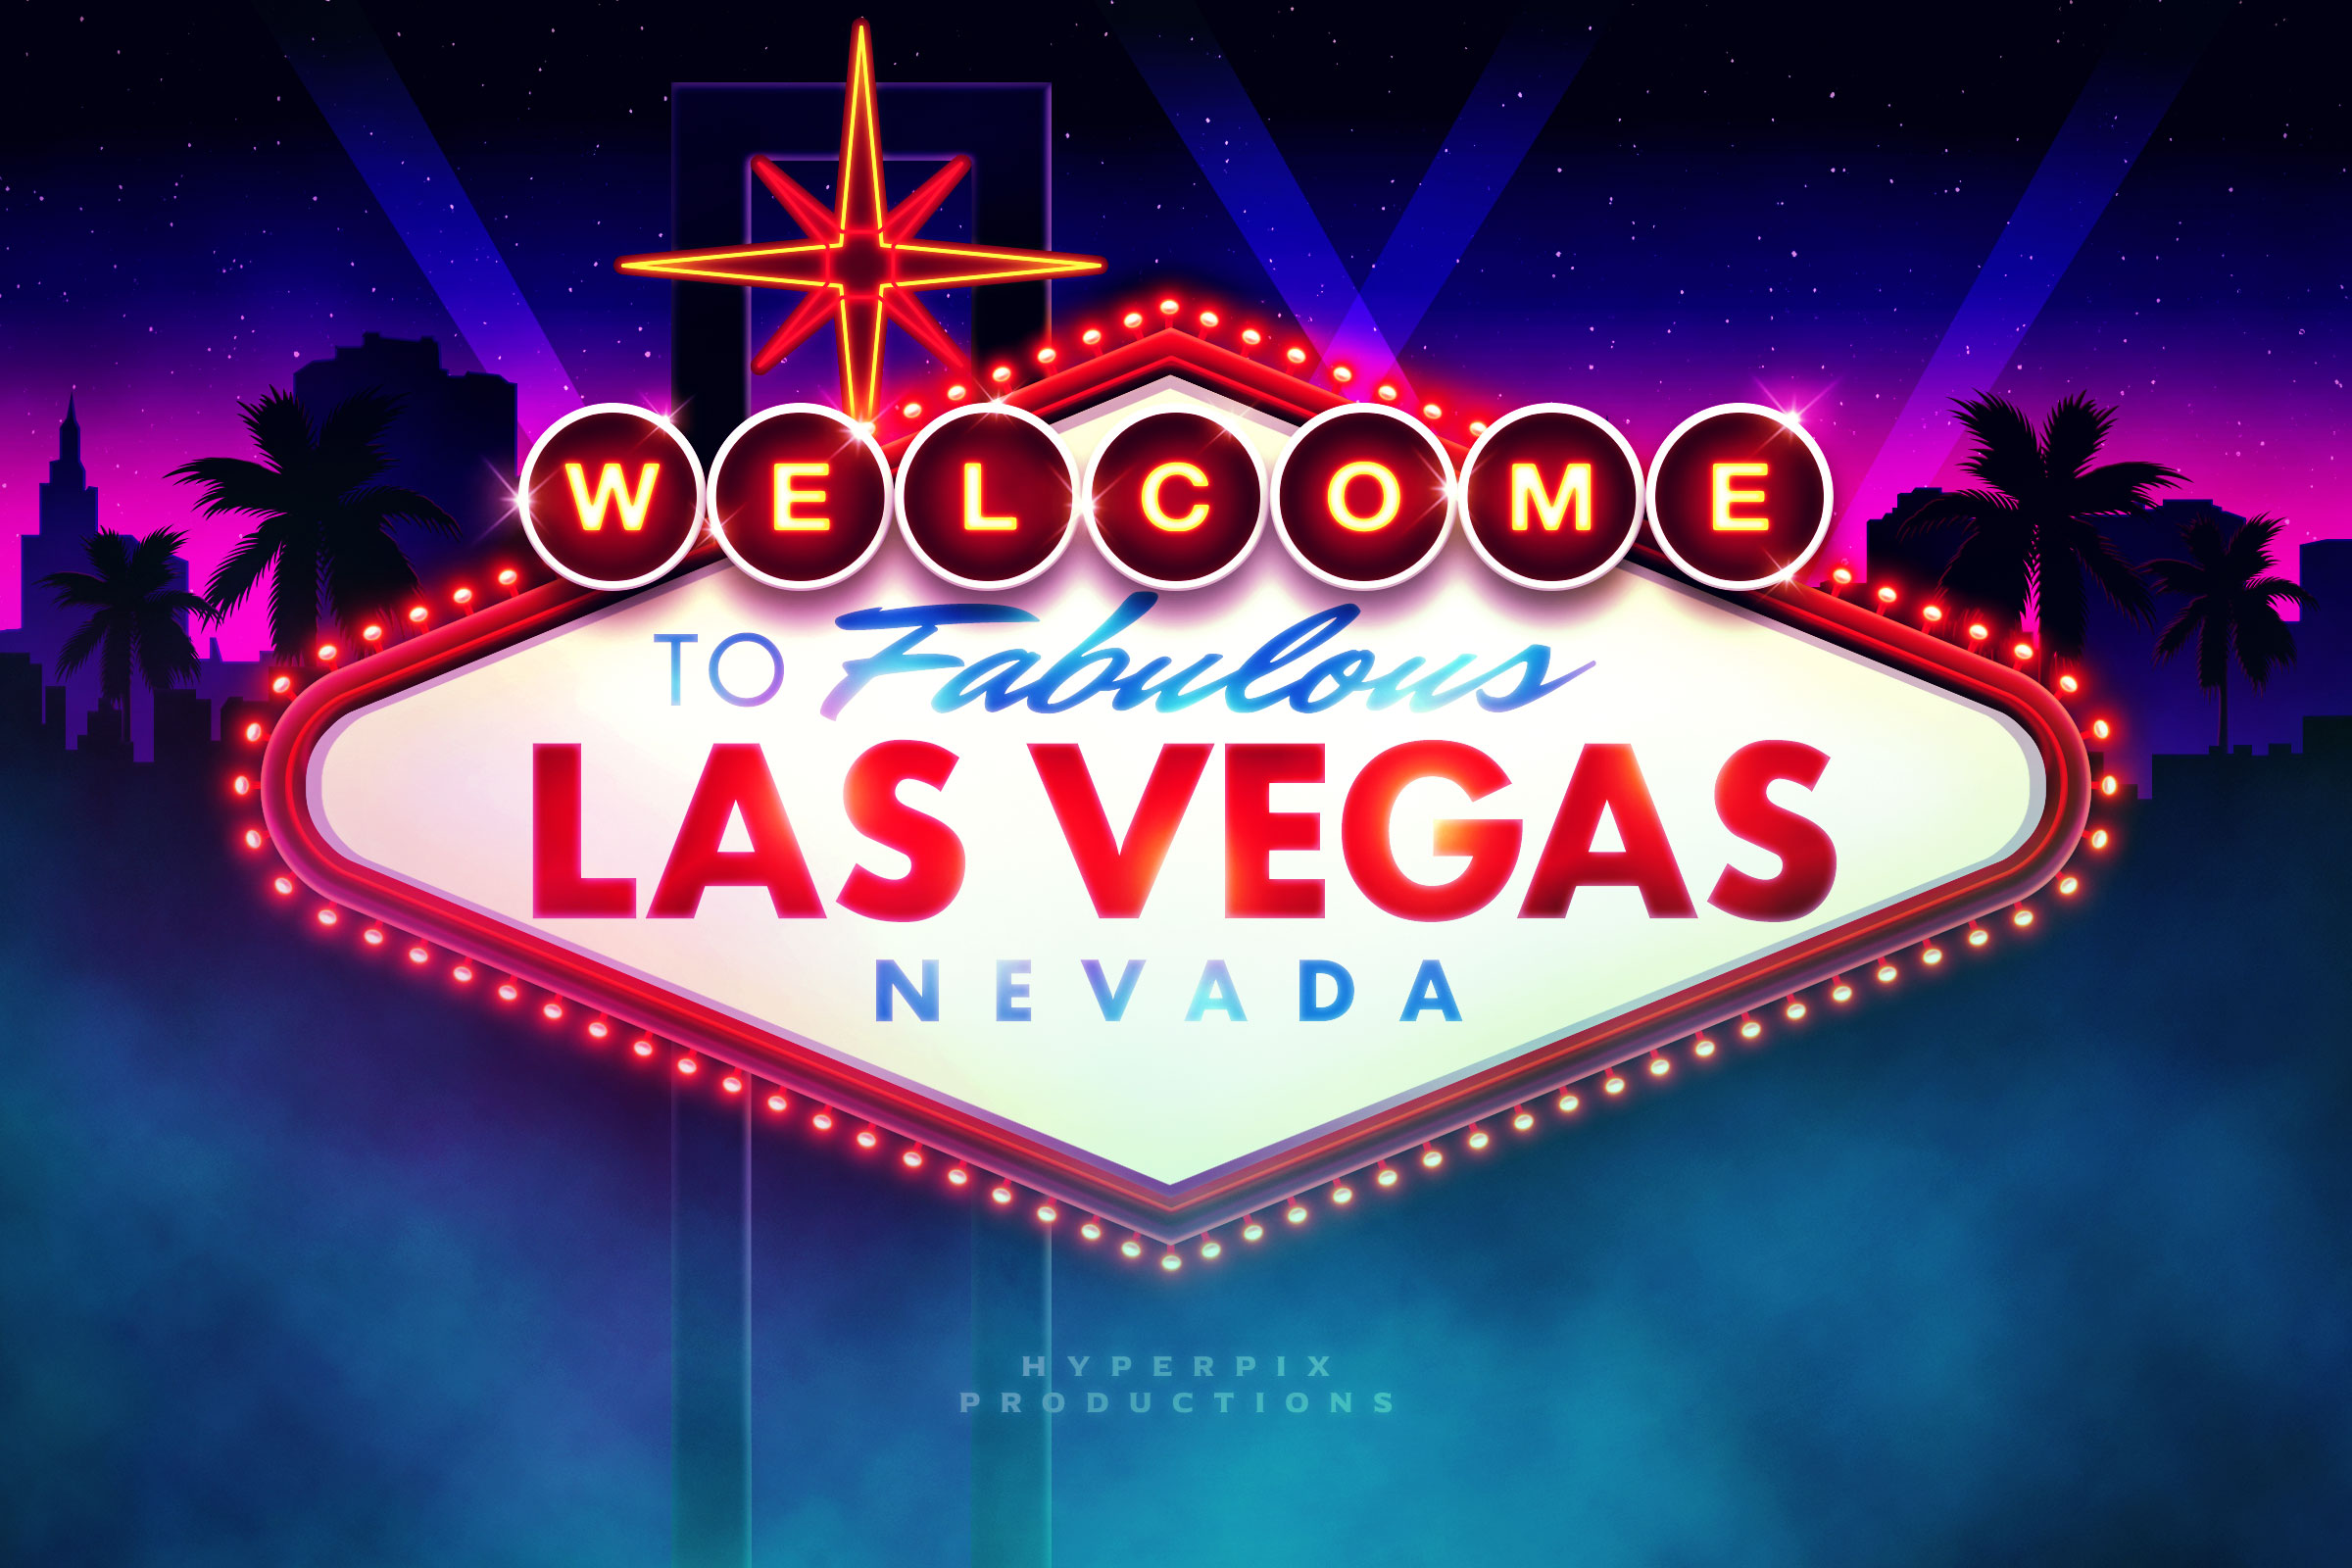 to Fabulous Las Vegas Sign Mockup PSD Template Hyperpix